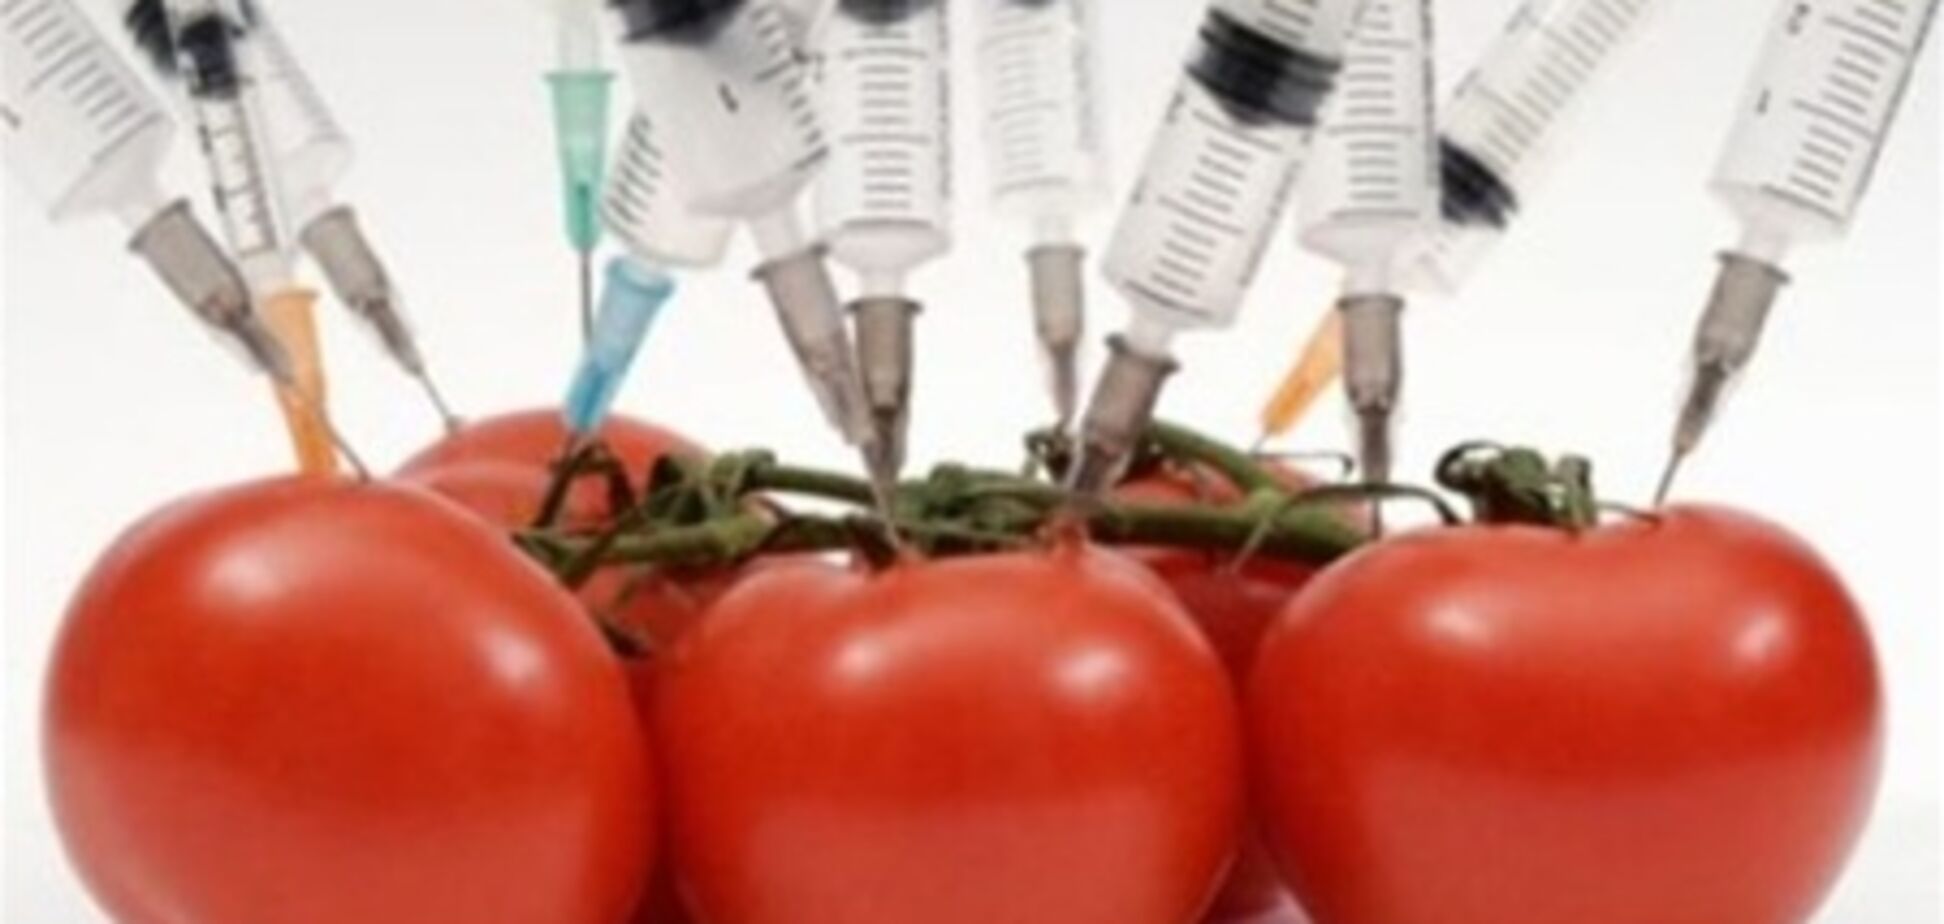 Роспотребнадзор: в продукты необходимо внедрять ГМО